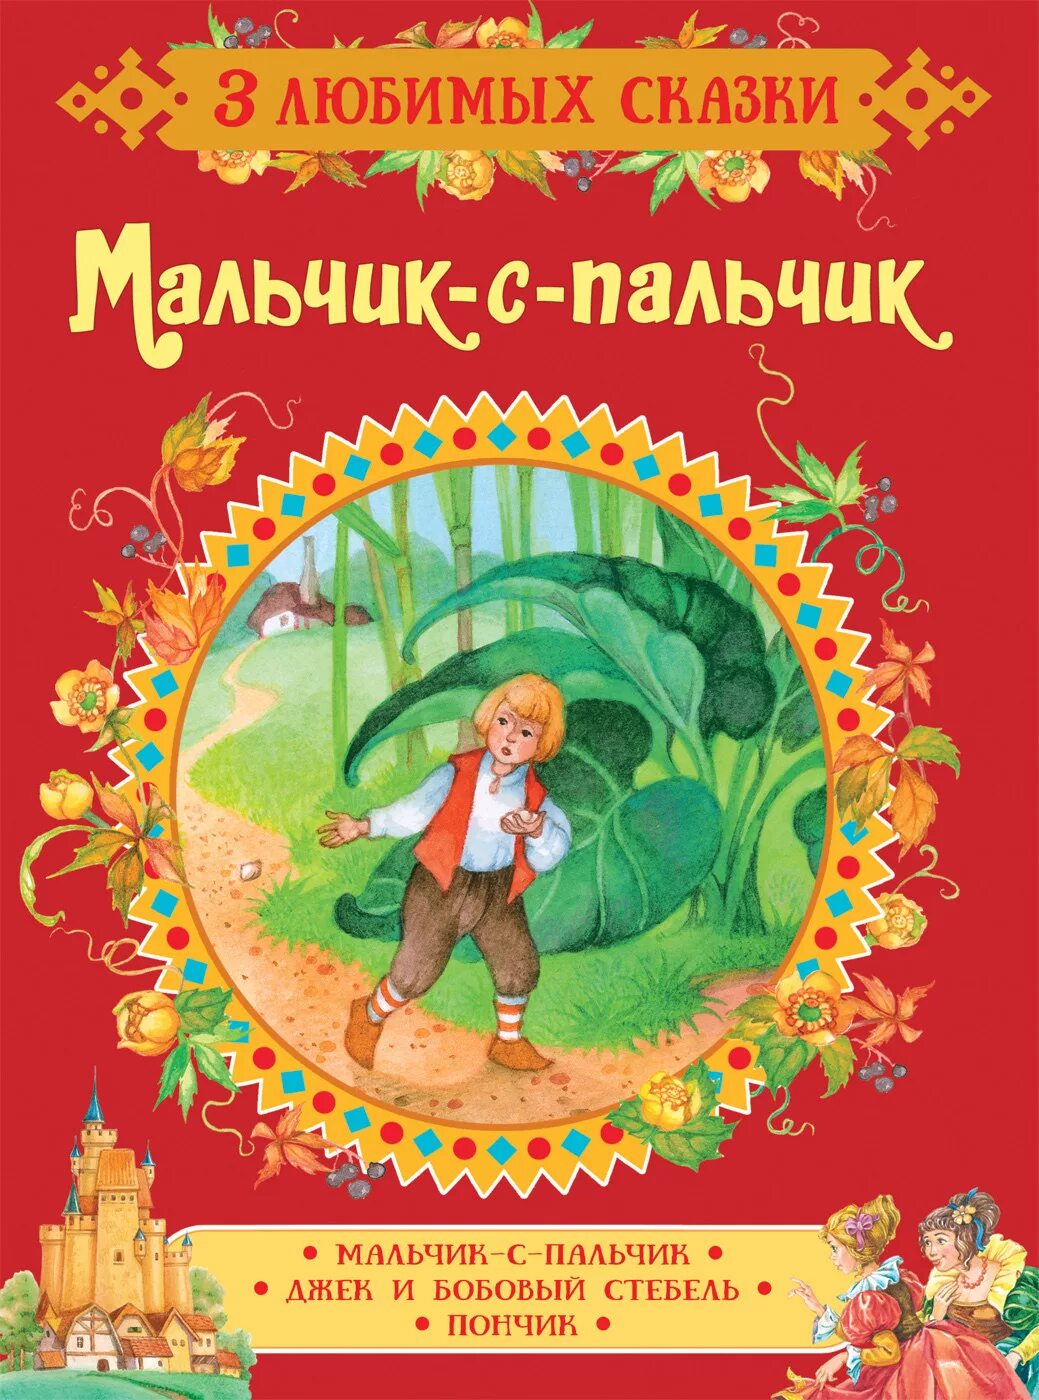 Мальчик с пальчик русская народная сказка читать. Мальчик-с-пальчик сказка. Мальчик с пальчик Перро книга.